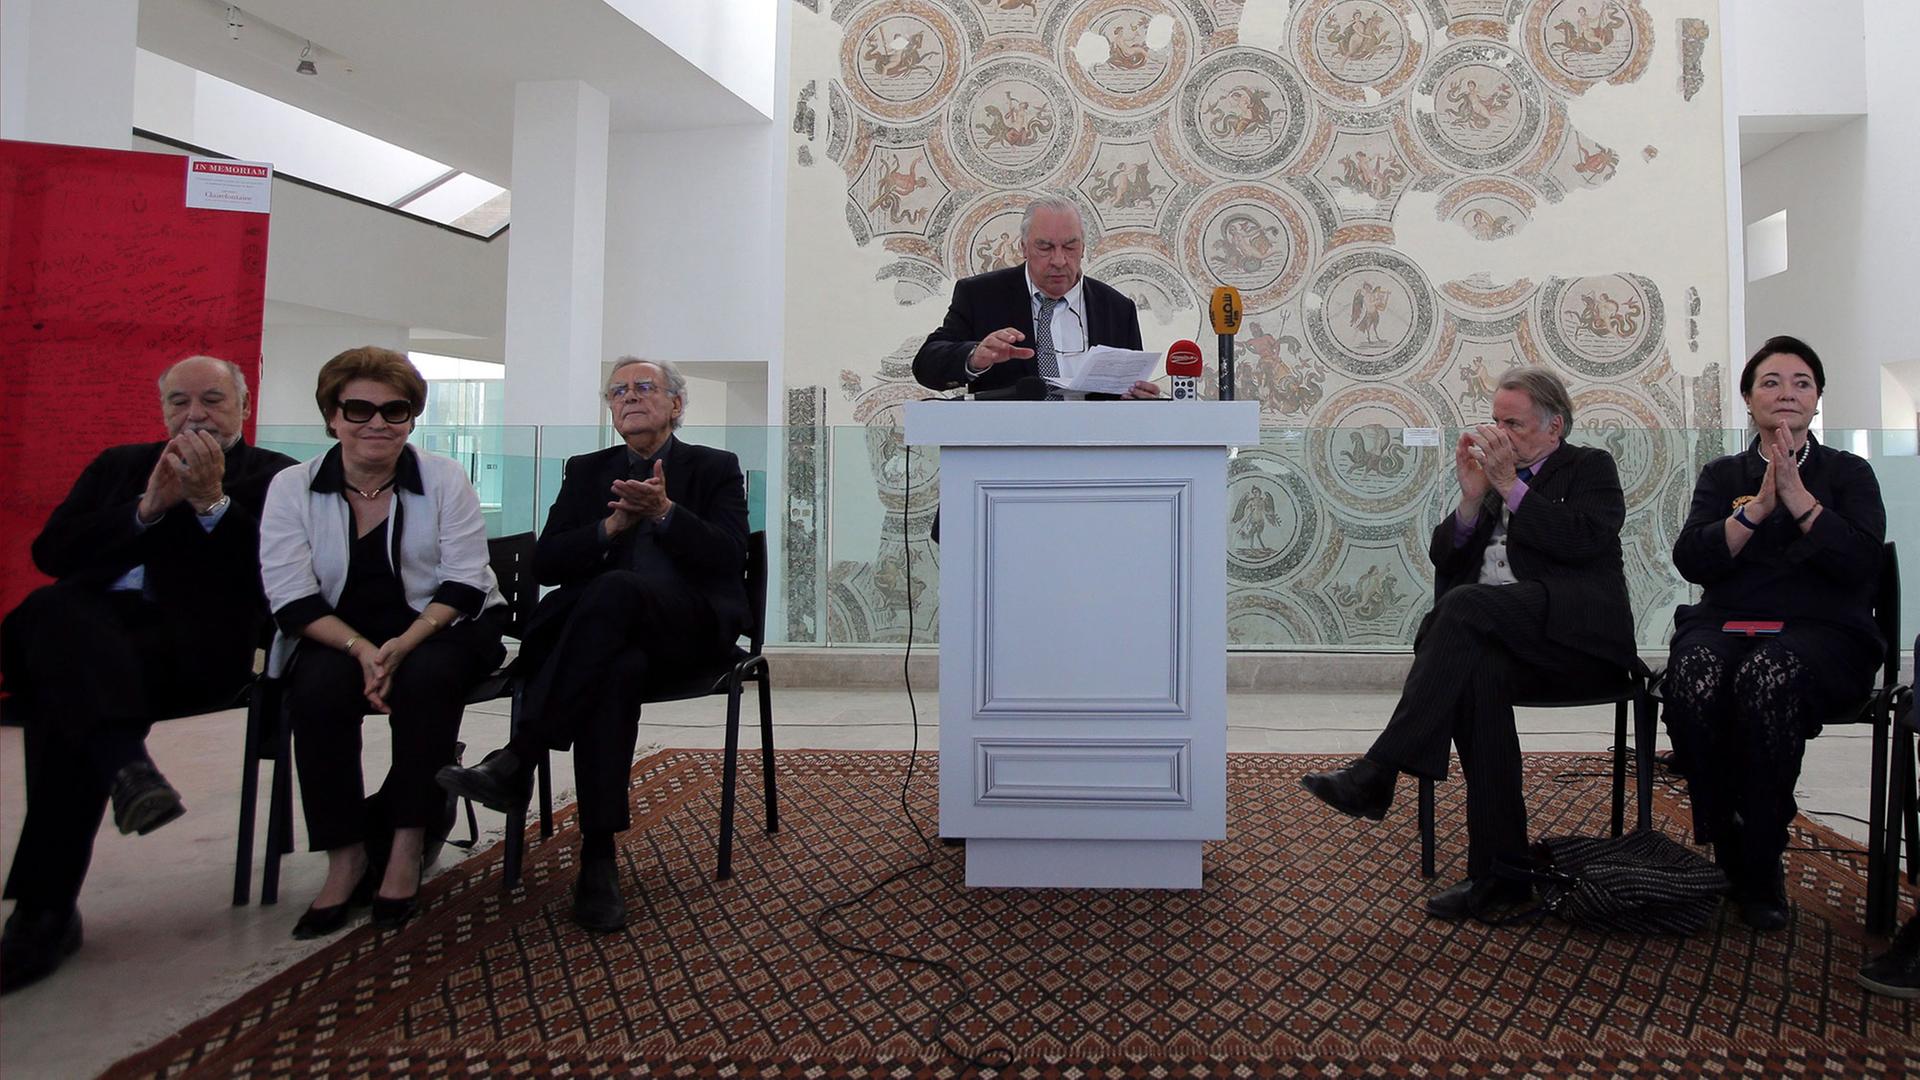 Die Jury des Prix Goncourt: Didier Decoin steht am Sprecherpult, links Ben Jelloun und Francoise Chandernagor (2. von links), Bernarnd Pivot (3. von links), rechts sitzen Regis Debray (2.-r) und Paule Constant.